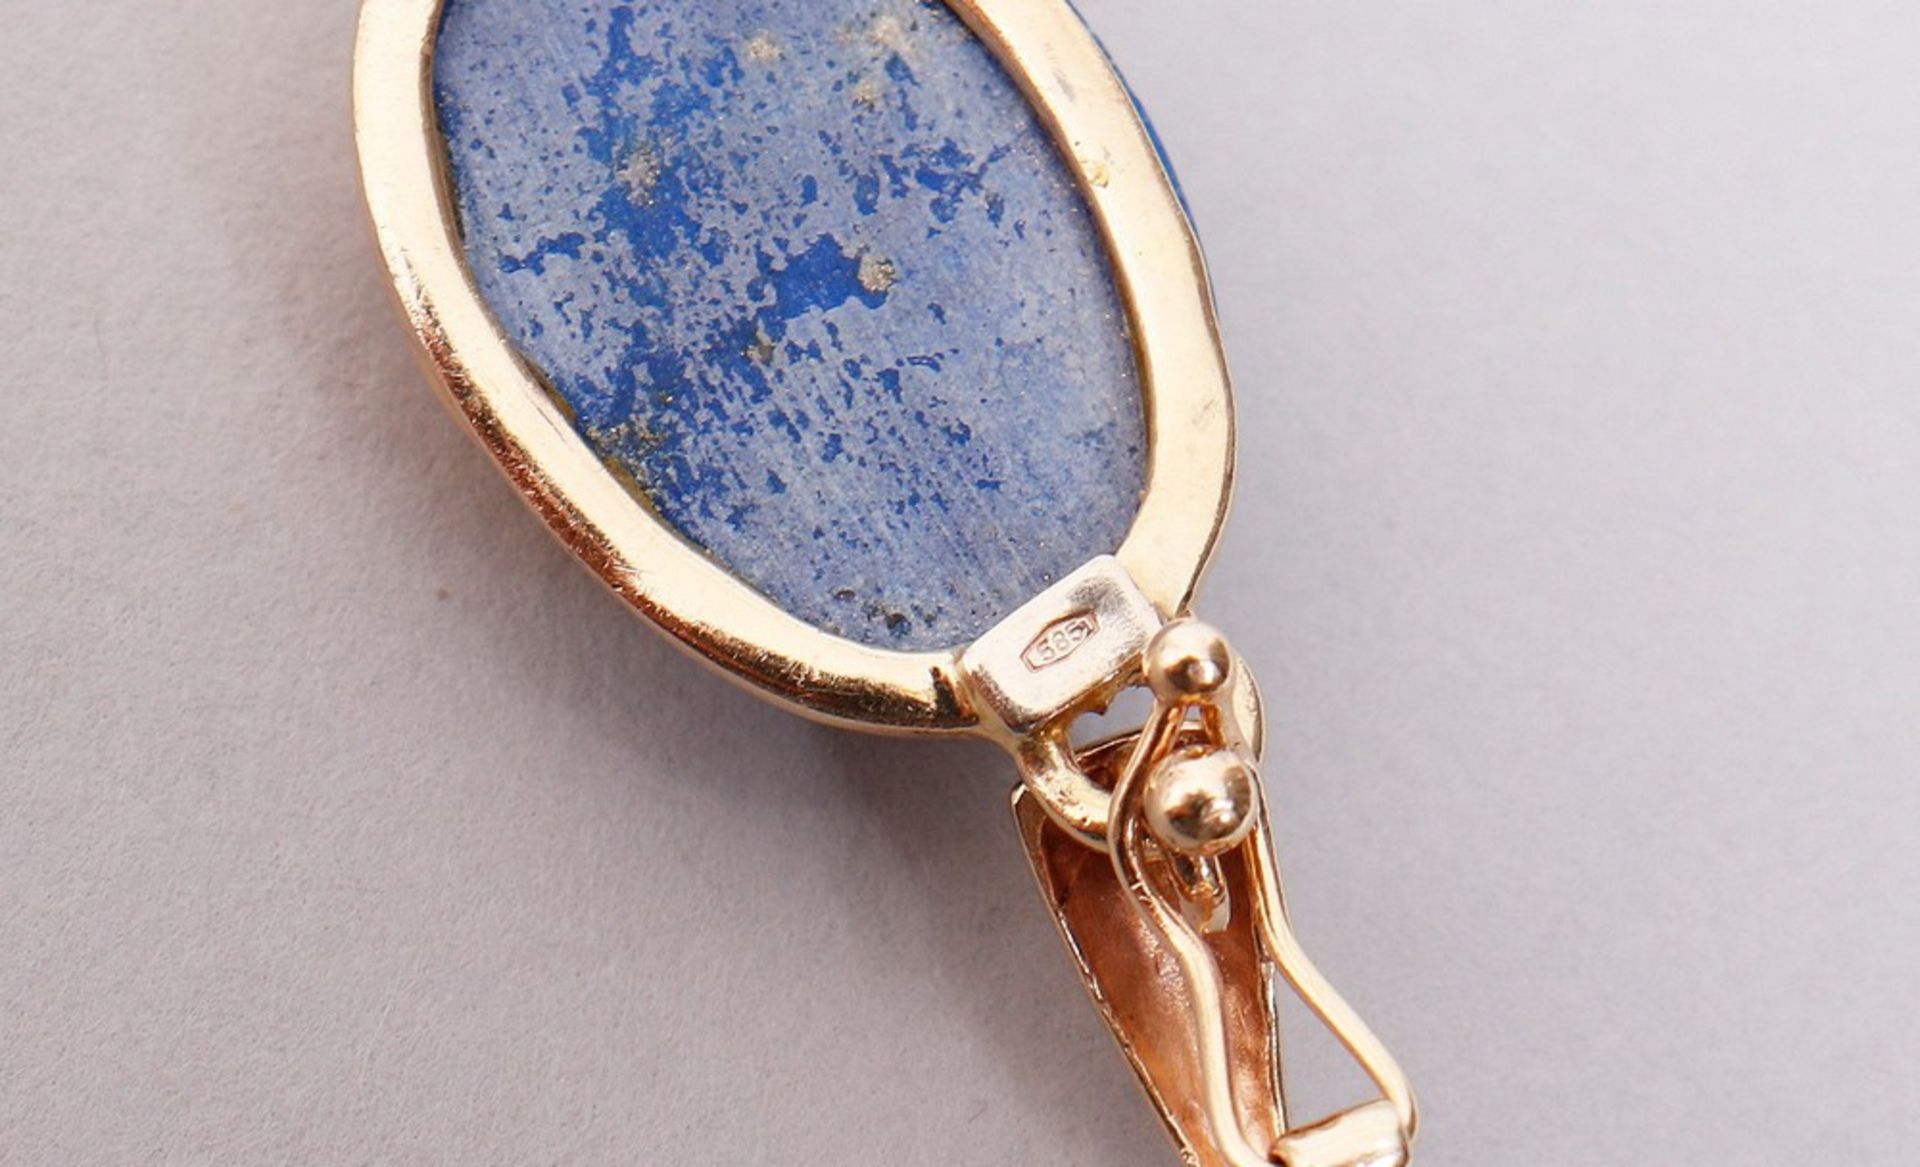 Pendant, 585 gold, lapis lazuli cabochon - Image 4 of 4